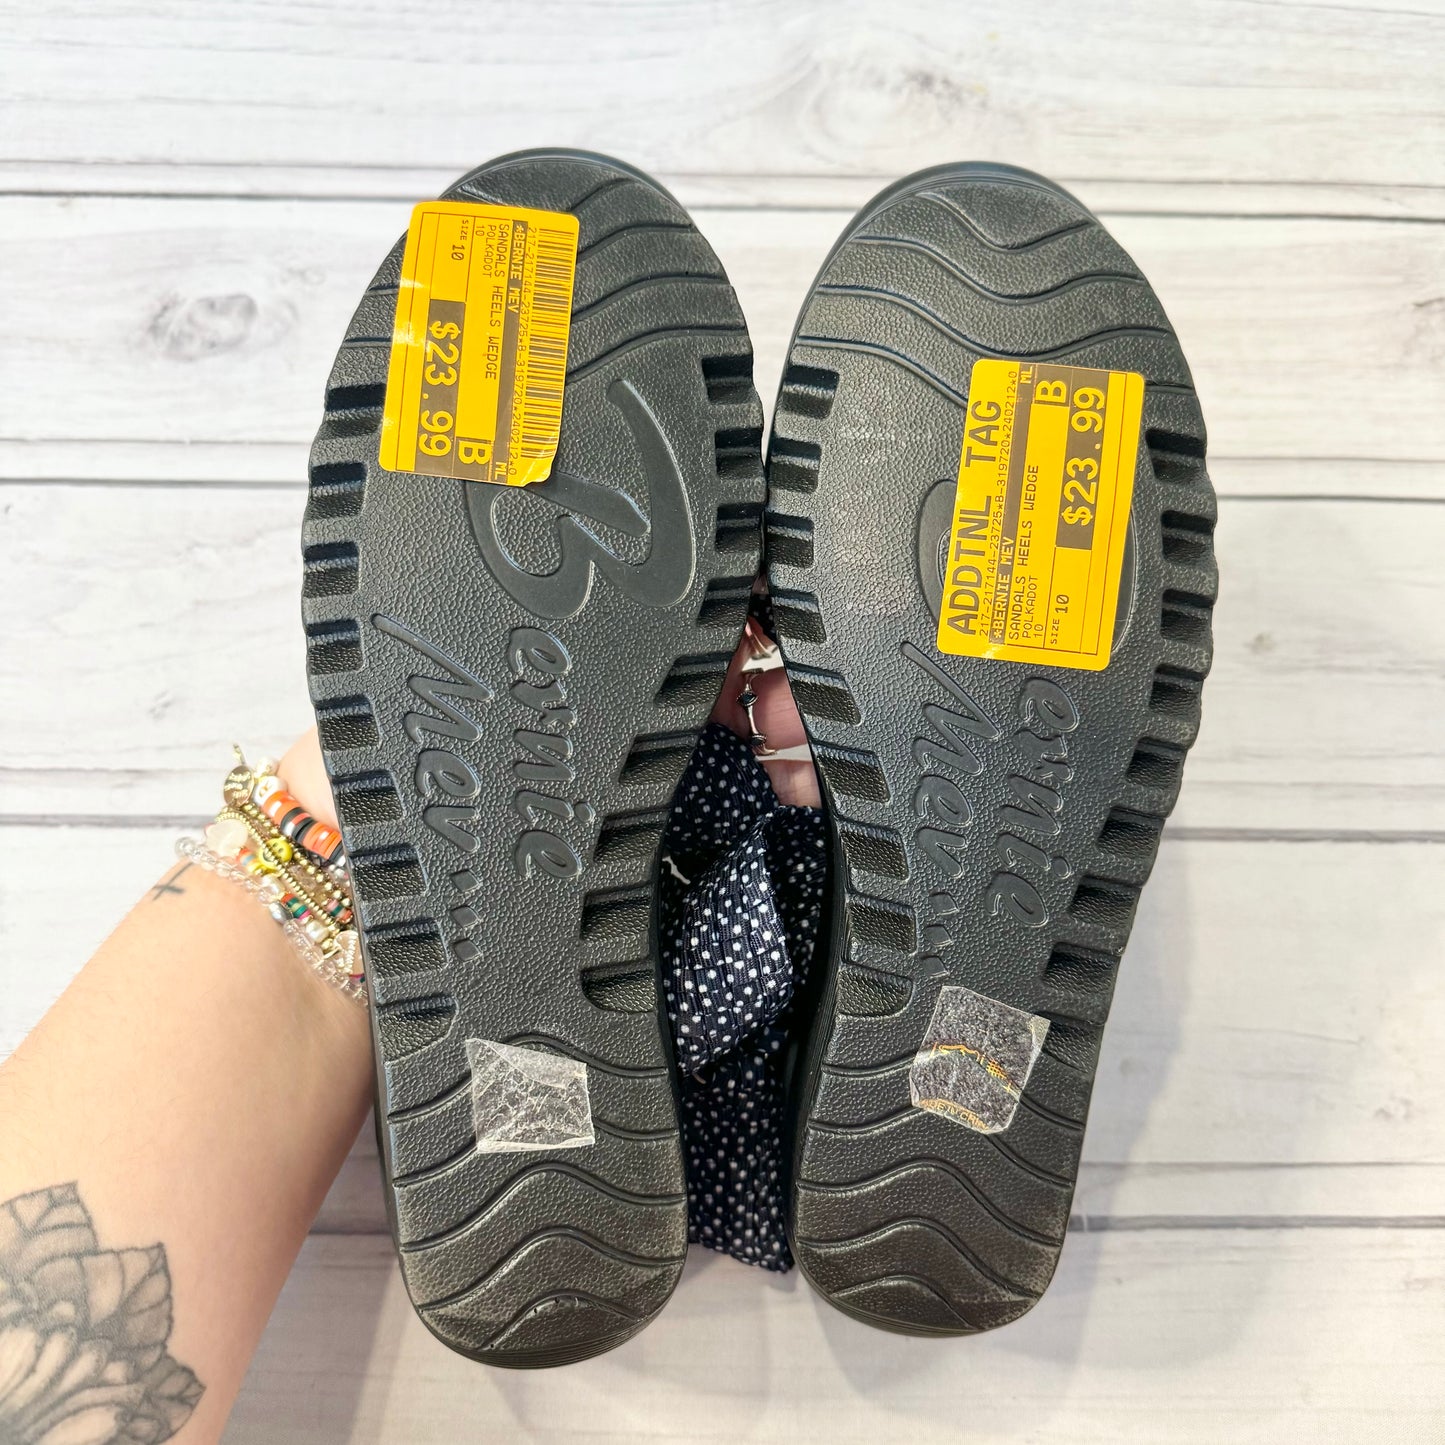 Sandals Heels Wedge By Bernie Mev  Size: 10